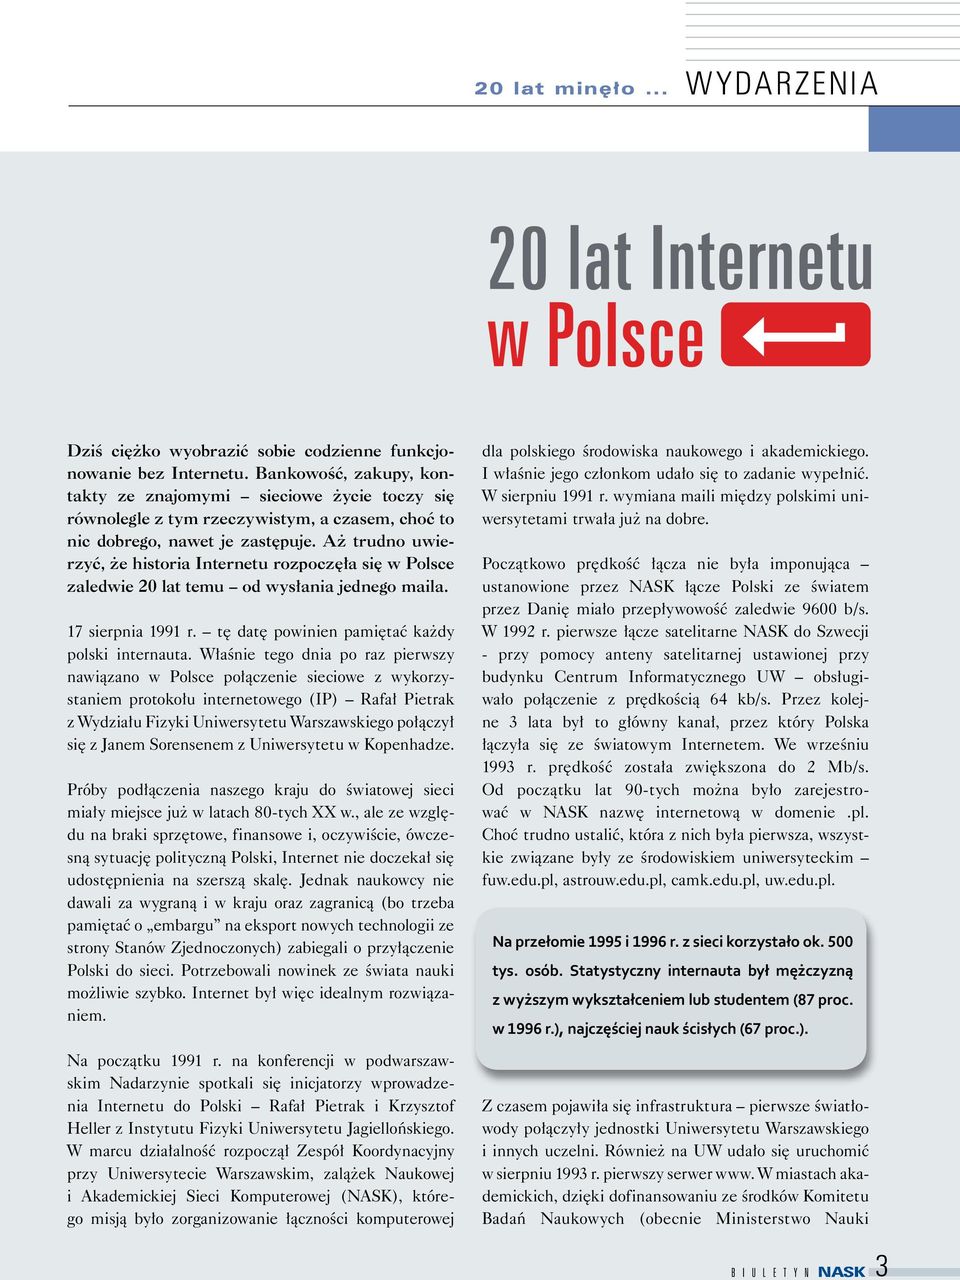 Aż trudno uwierzyć, że historia Internetu rozpoczęła się w Polsce zaledwie 20 lat temu od wysłania jednego maila. 17 sierpnia 1991 r. tę datę powinien pamiętać każdy polski internauta.